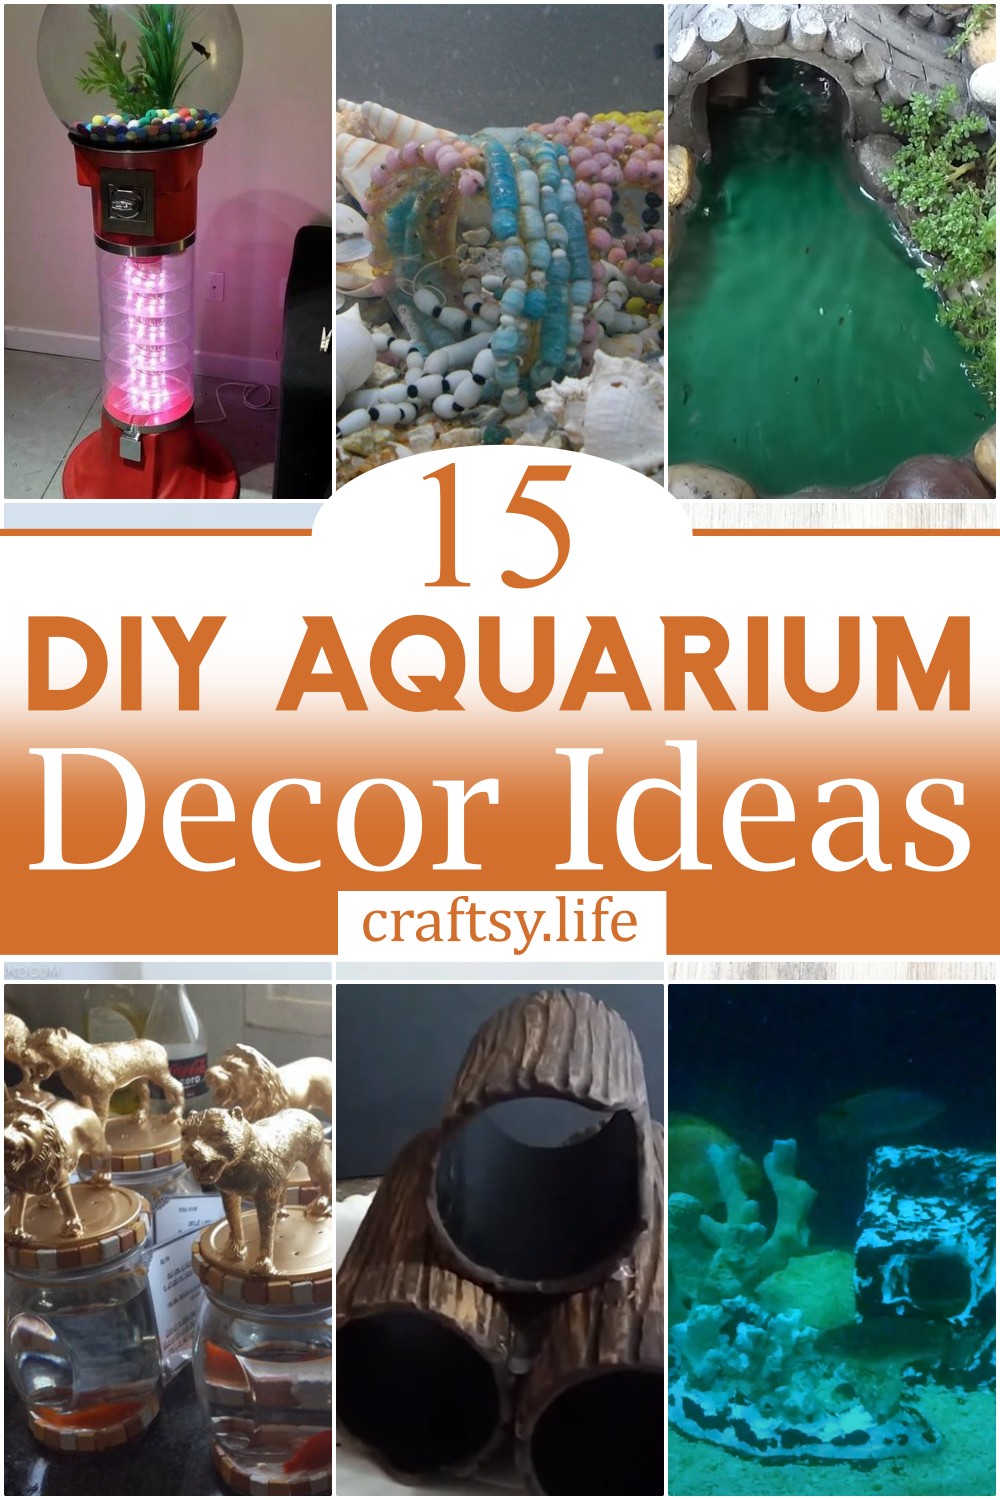 DIY Aquarium Decor Ideas